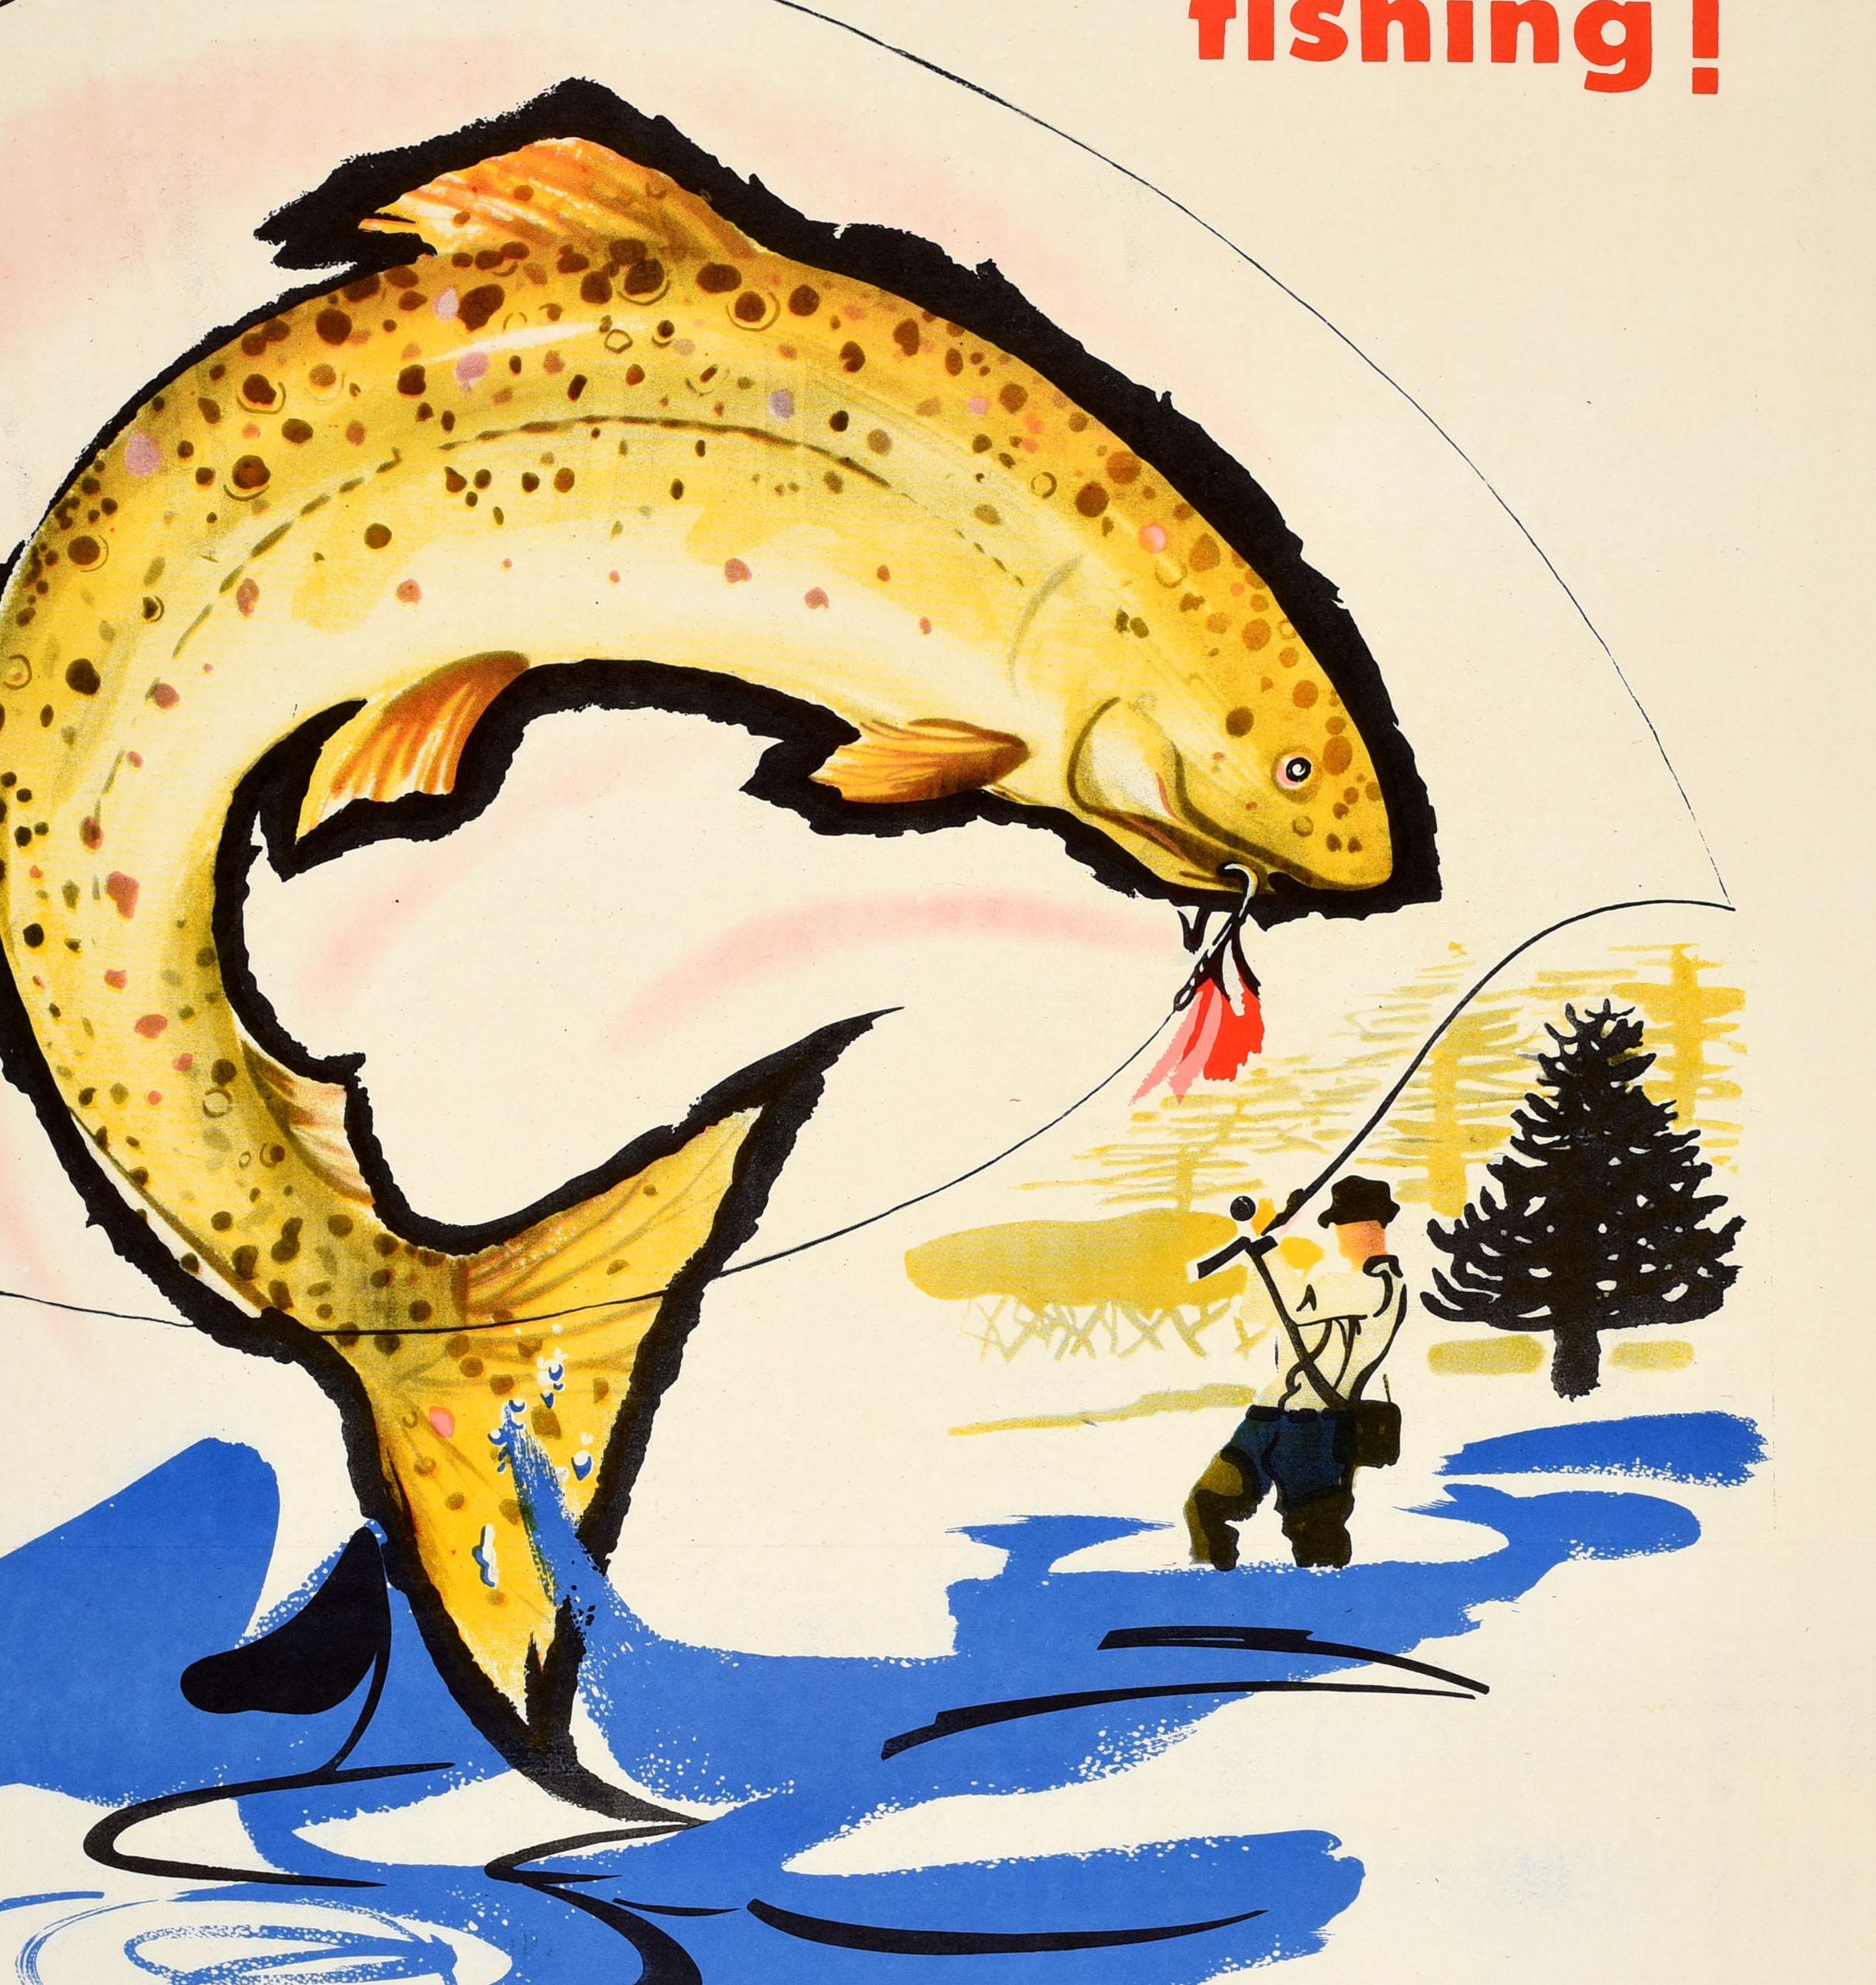 Original Vintage-Reiseplakat, das für das Fischen in Argentinien wirbt, herausgegeben von der Direccion Nacional de Turismo / National Directorate of Tourism mit einem dynamischen Kunstwerk, das eine Forelle zeigt, die an einem Haken einer